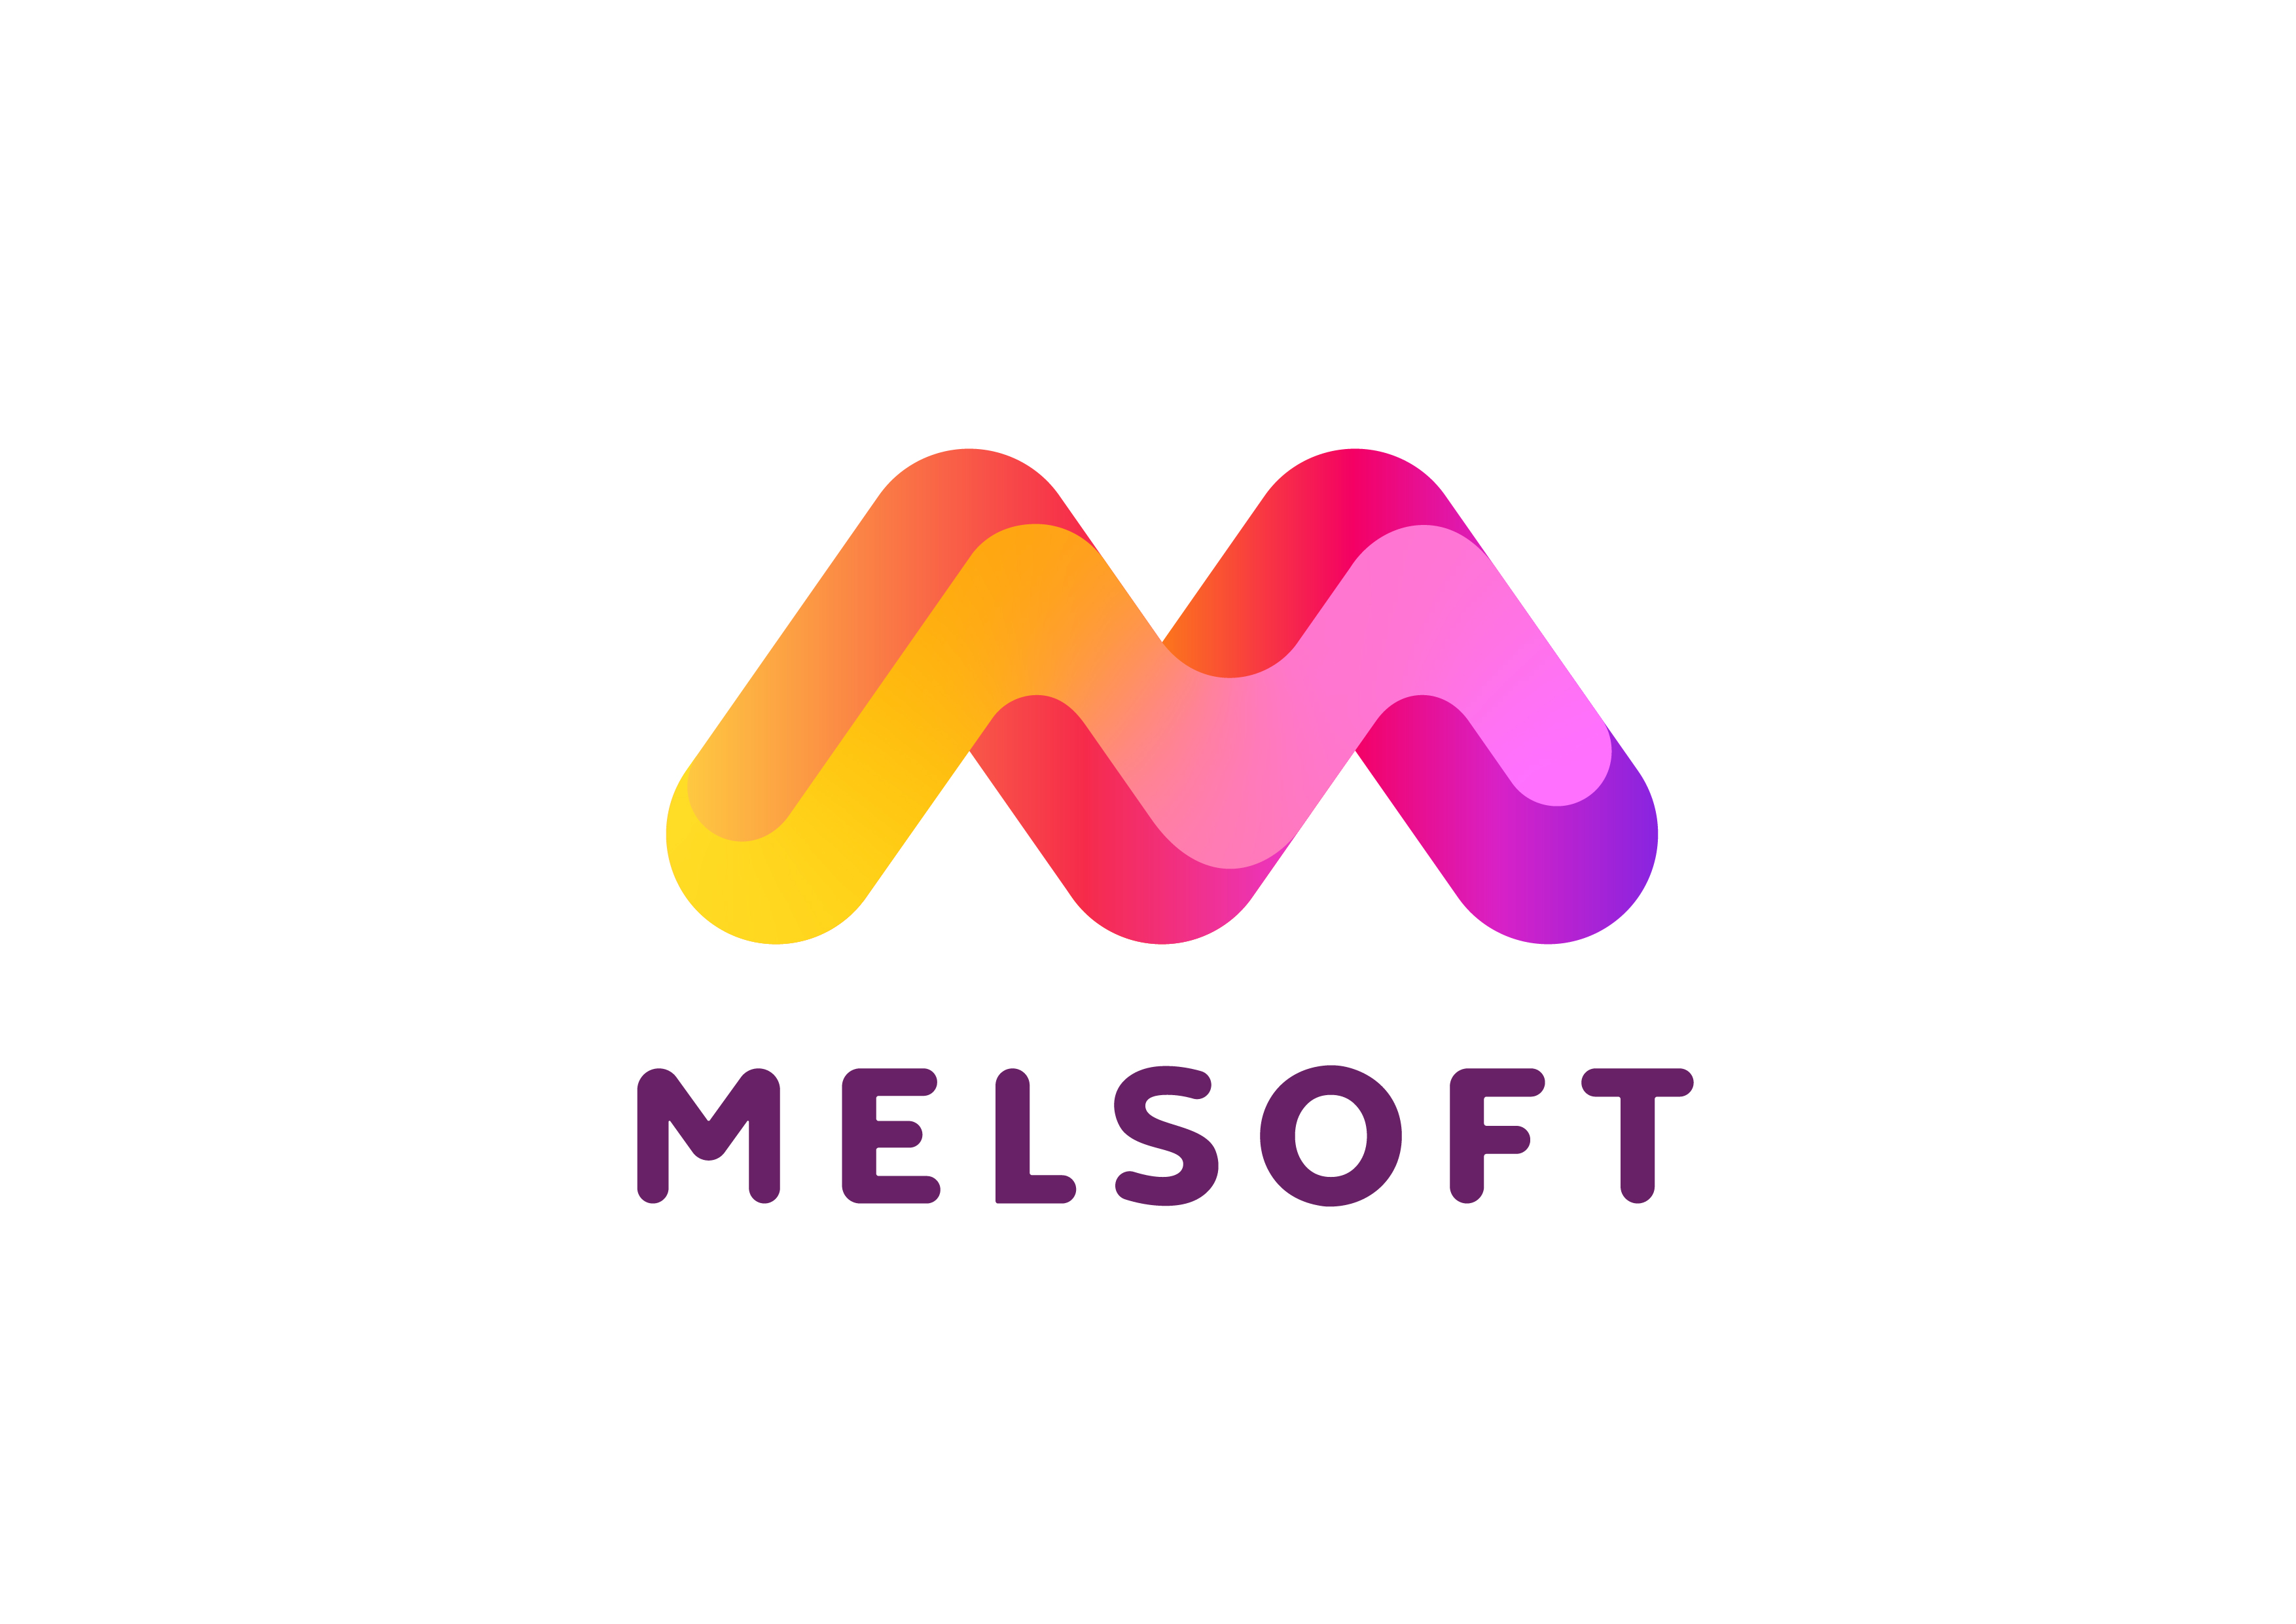 Melsoft Games